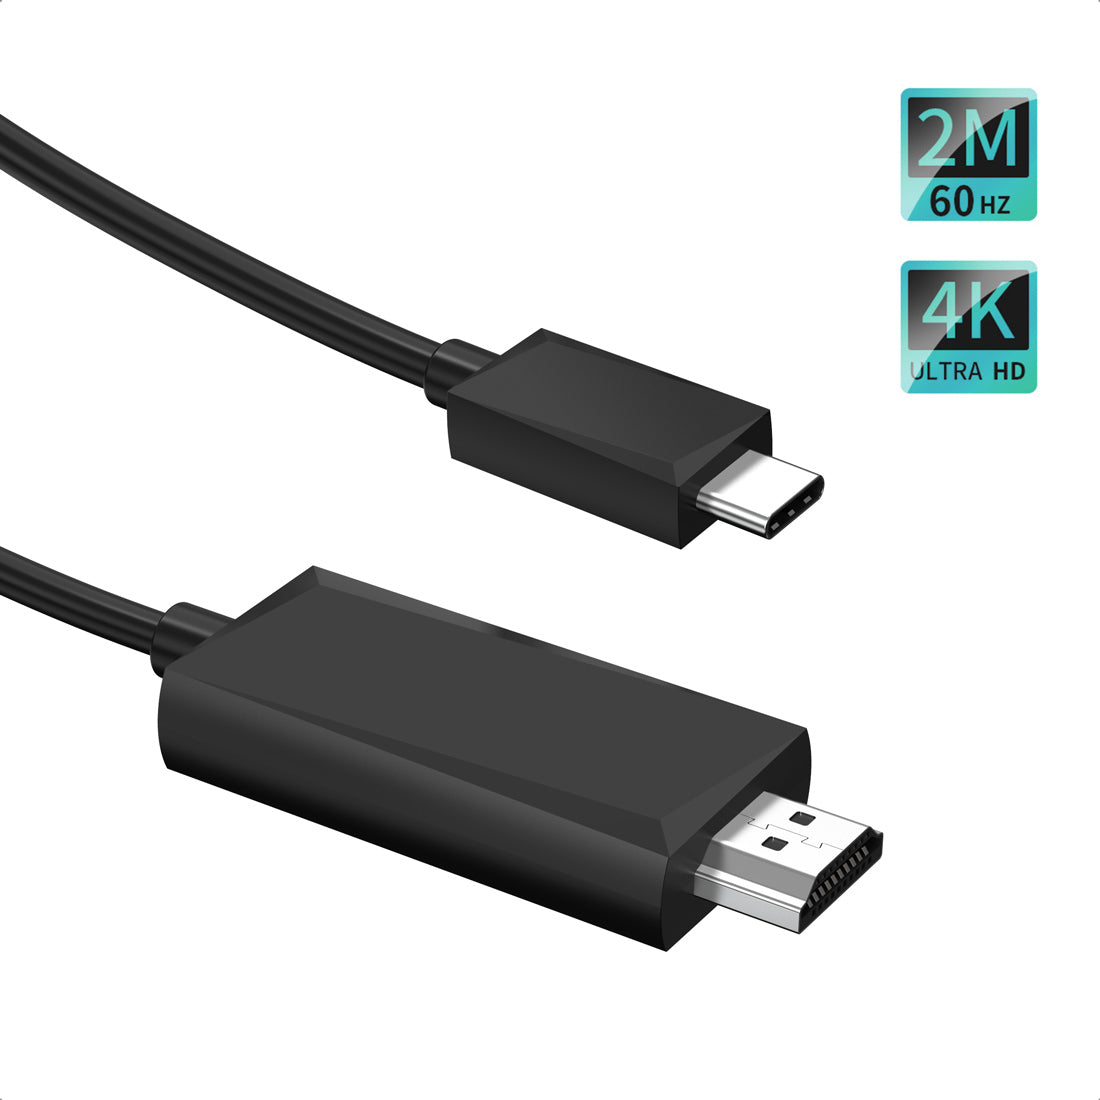 CH0020 Cable USB C a HDMI (4K a 60 Hz), cable tipo C a HDMI [compatible con Thunderbolt 3] para MacBook Pro 2019/2018/2017, MacBook Air/iPad Pro 2019/2018, Surface Book2, Galaxy S10 y más. Negro-2m/6ft